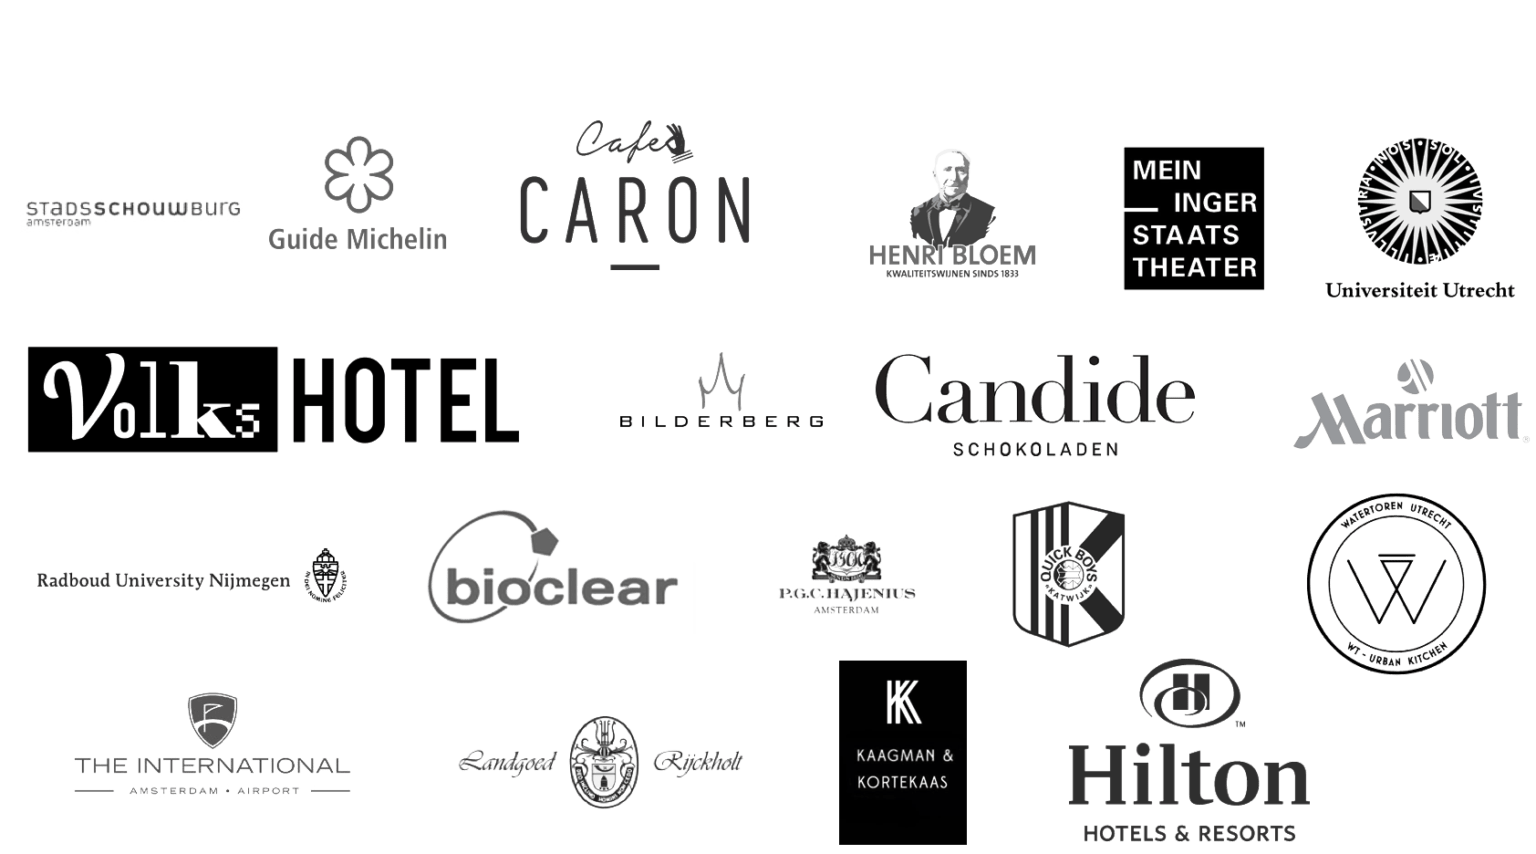 Un collage de divers logos d'entreprises et d'organisations, notamment d'établissements d'enseignement, d'hôtels, de théâtres et d'autres entreprises, présentés en noir et blanc.